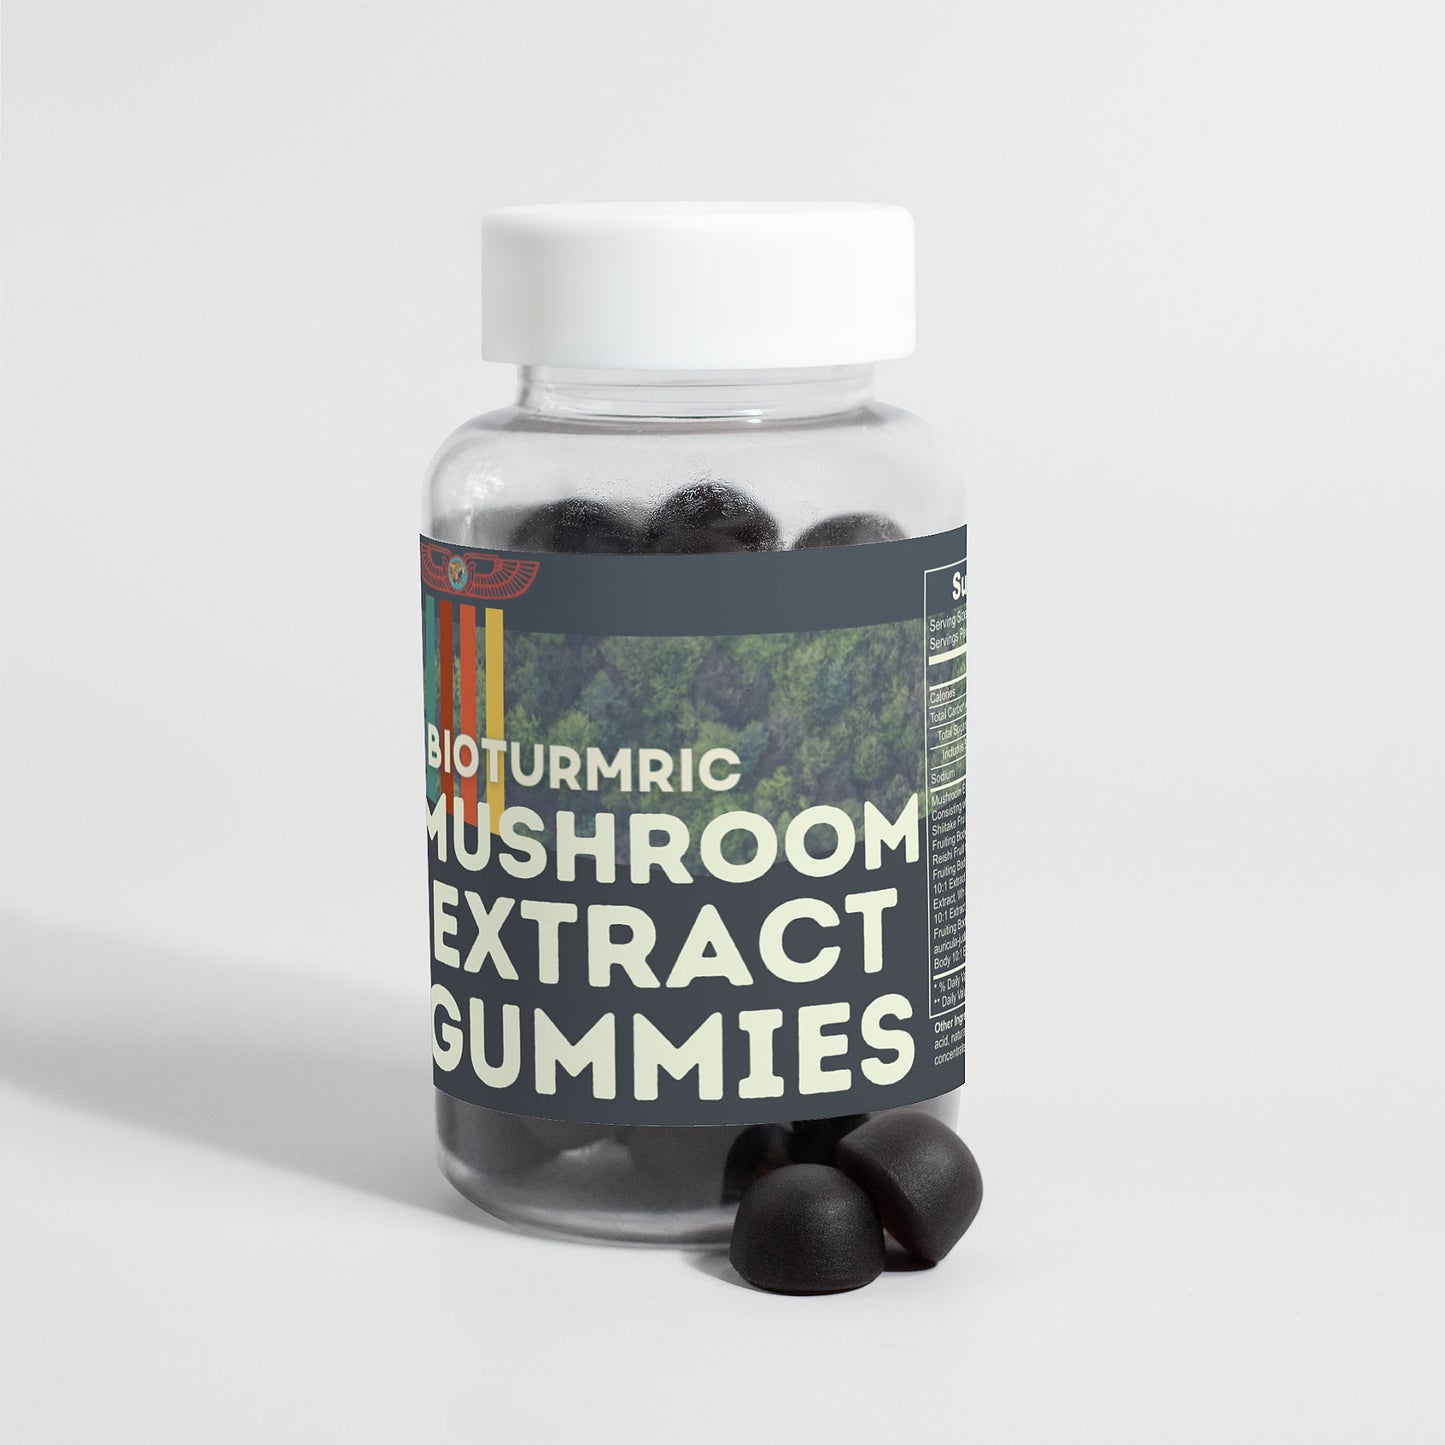 Gummies Shroom Bites